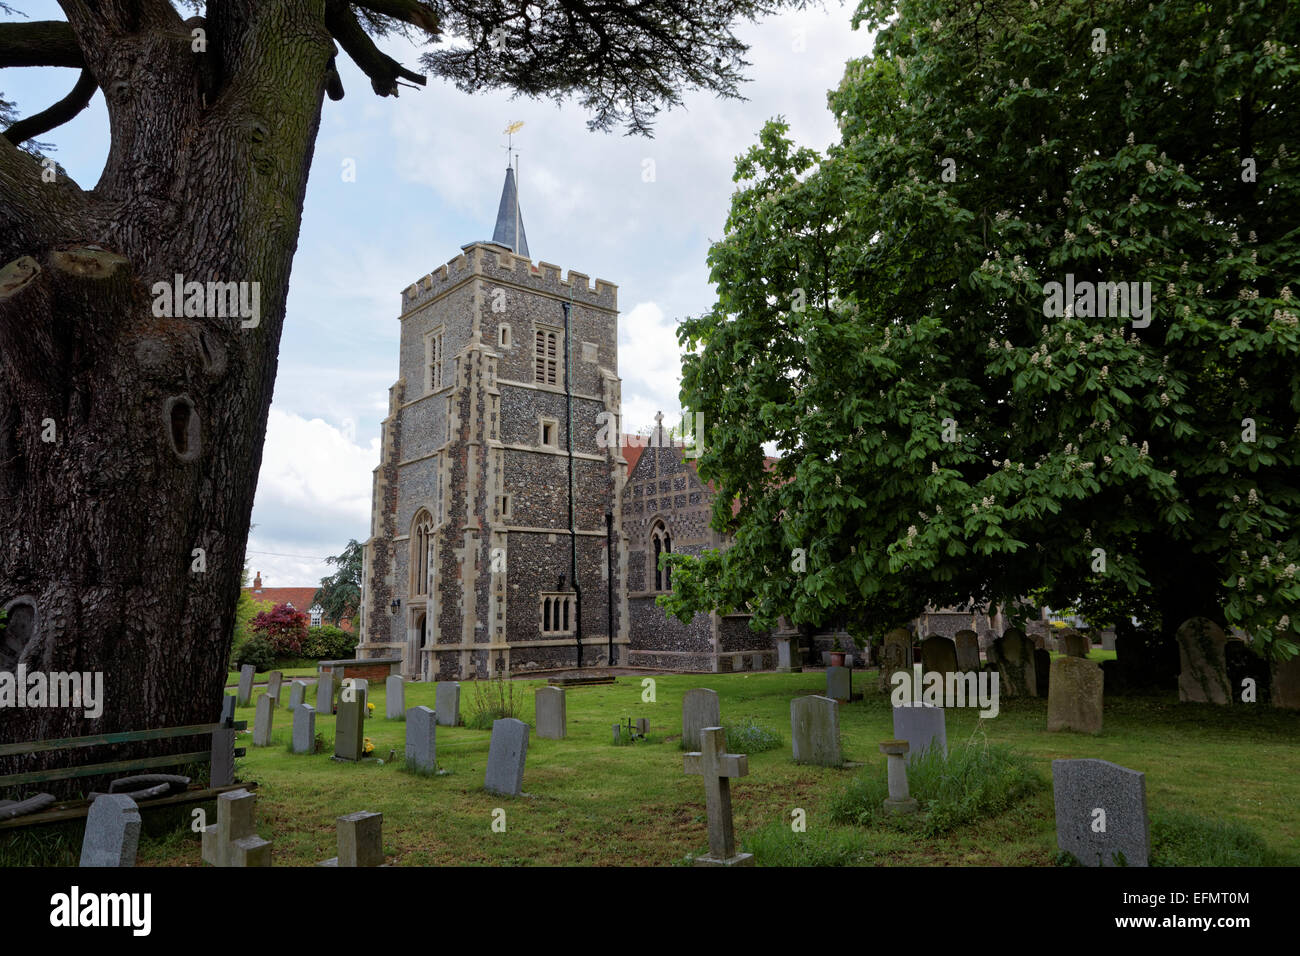 L'église de St Mary the Virgin, Essendon, Hertfordshire, England, UK Banque D'Images